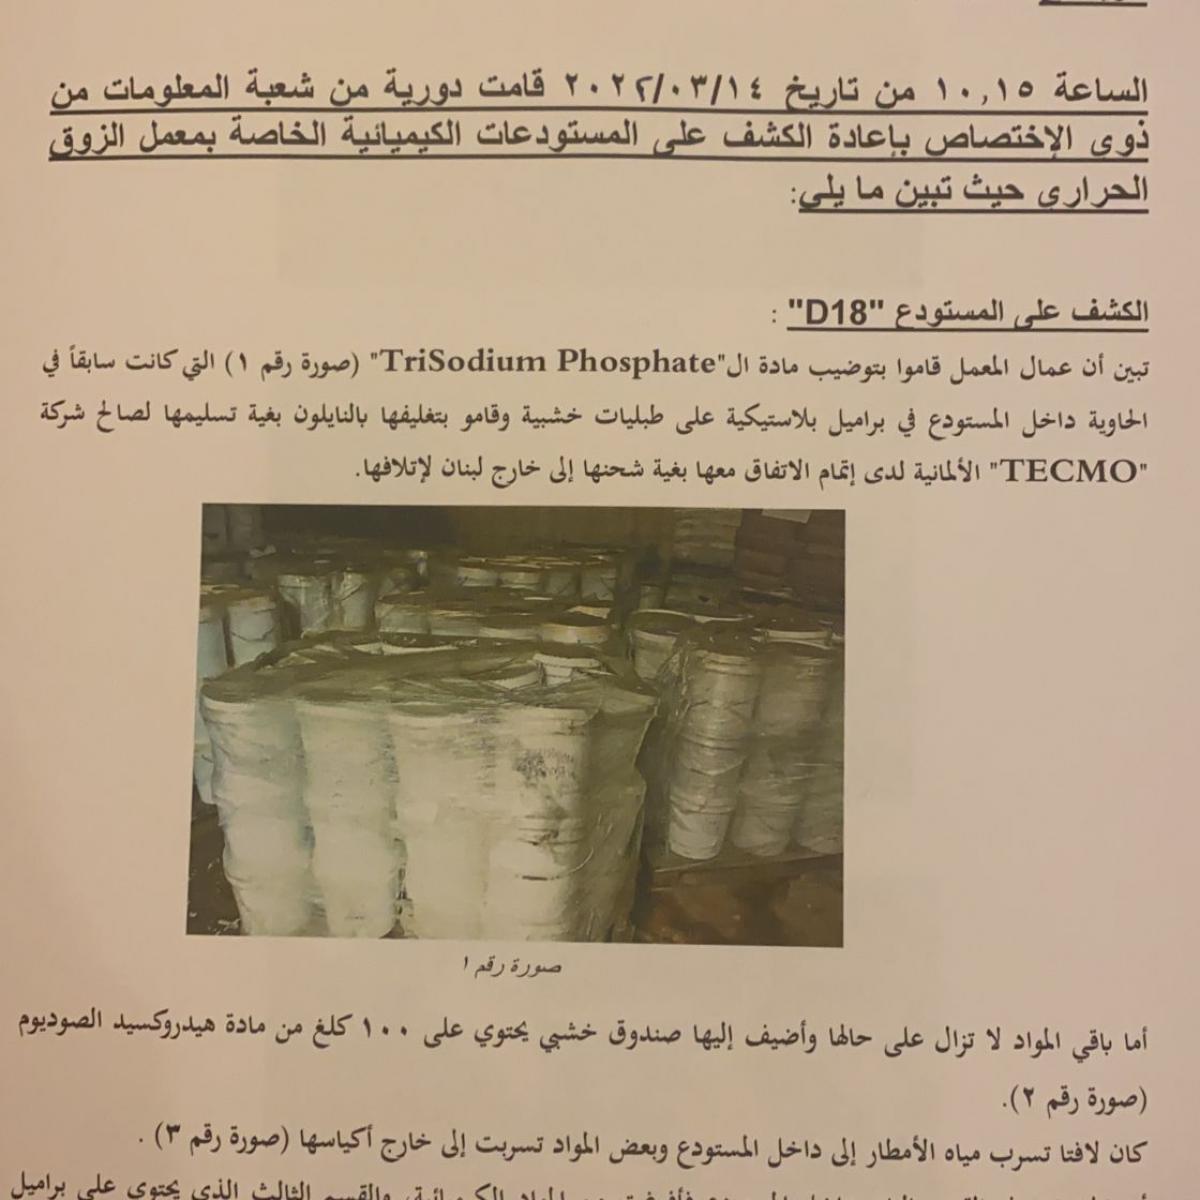 تقرير الداخلية اللبنانية عن وجود مواد خطيرة في معمل الذوق (العربي الجديد)